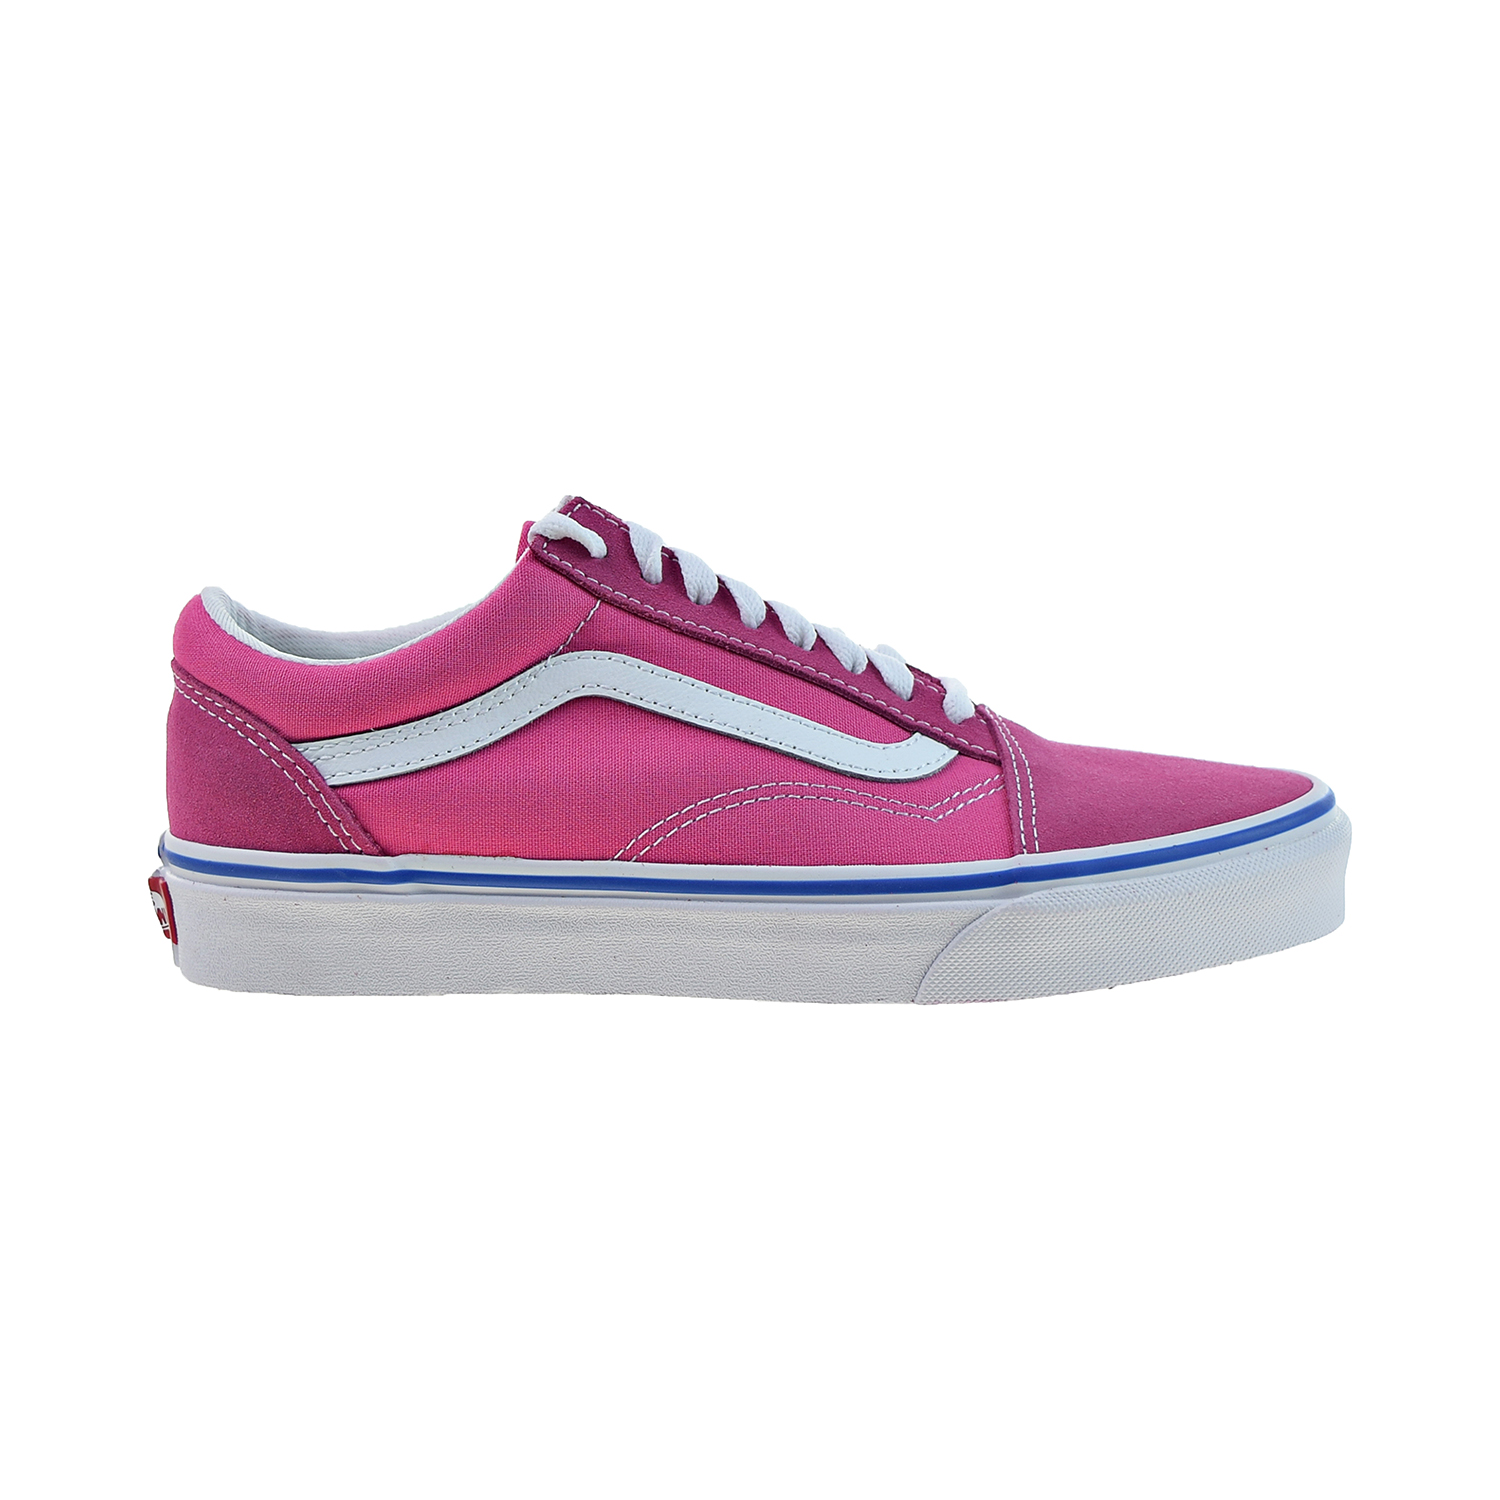 Vans Old Skool Men's Shoes Pink-White vn0a38g1-vrl (4.5 M US)